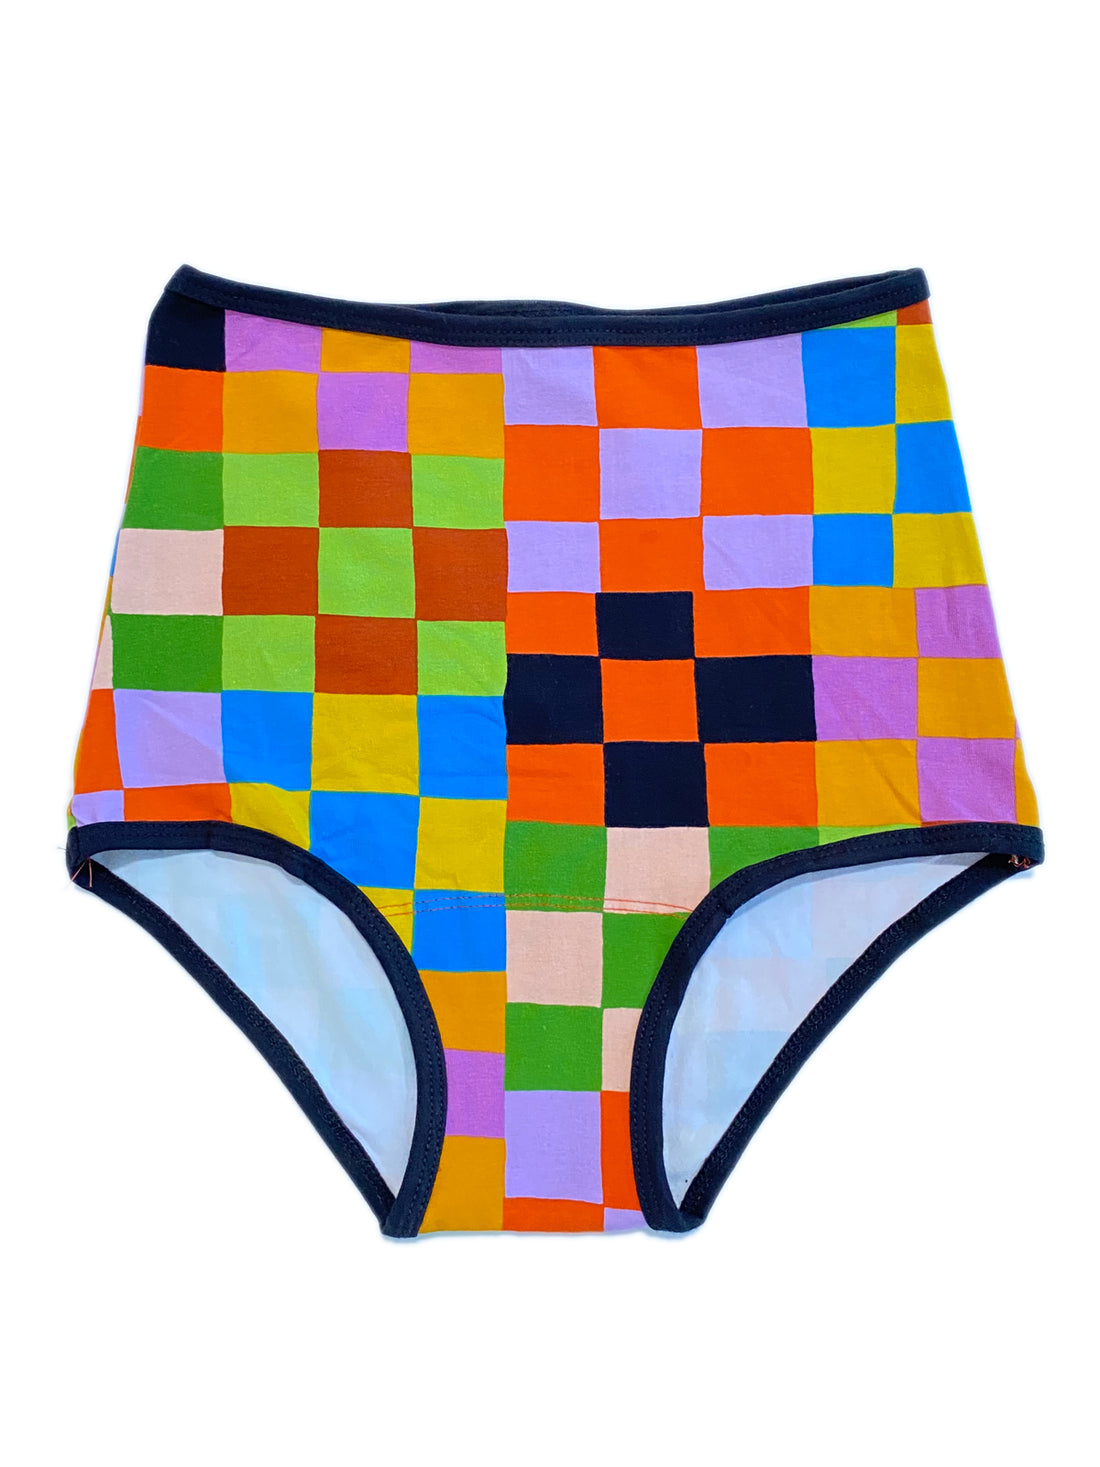 Underwear Carnival